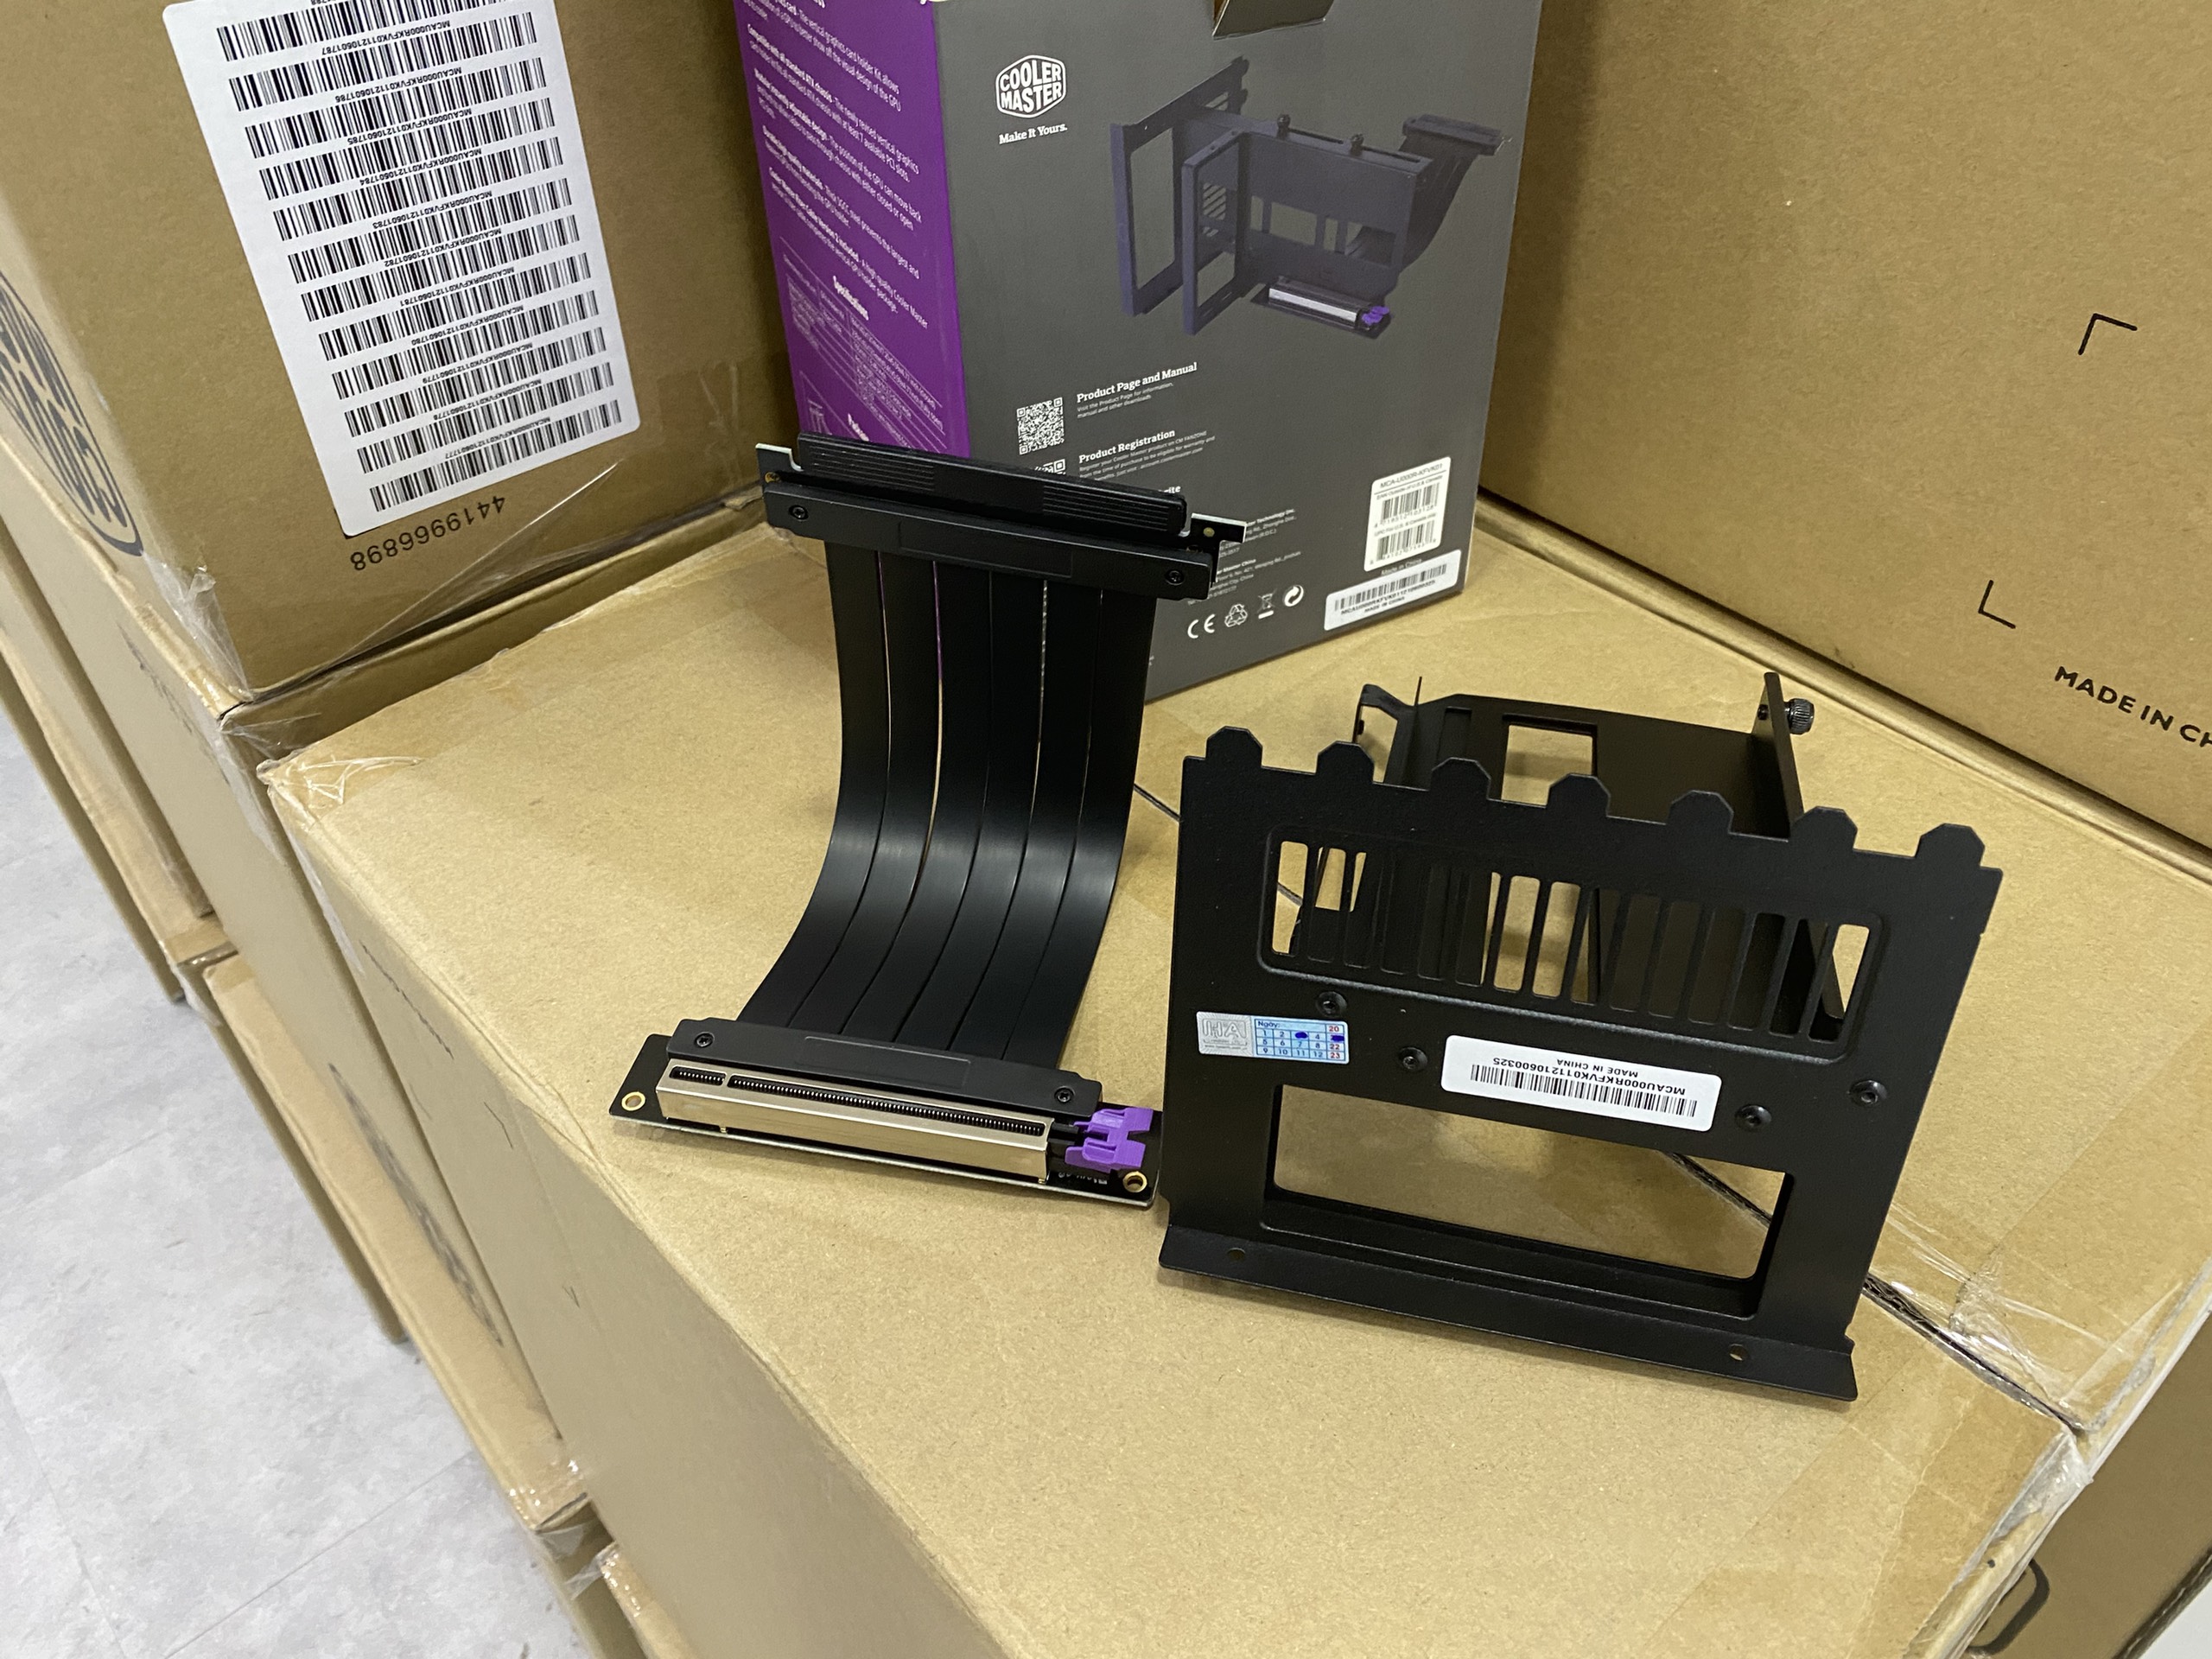 Bộ Dựng Đứng Vga Kèm Riser Cooler Master Vertical Graphics Card Holder Kit V2 - Hàng chính hãng